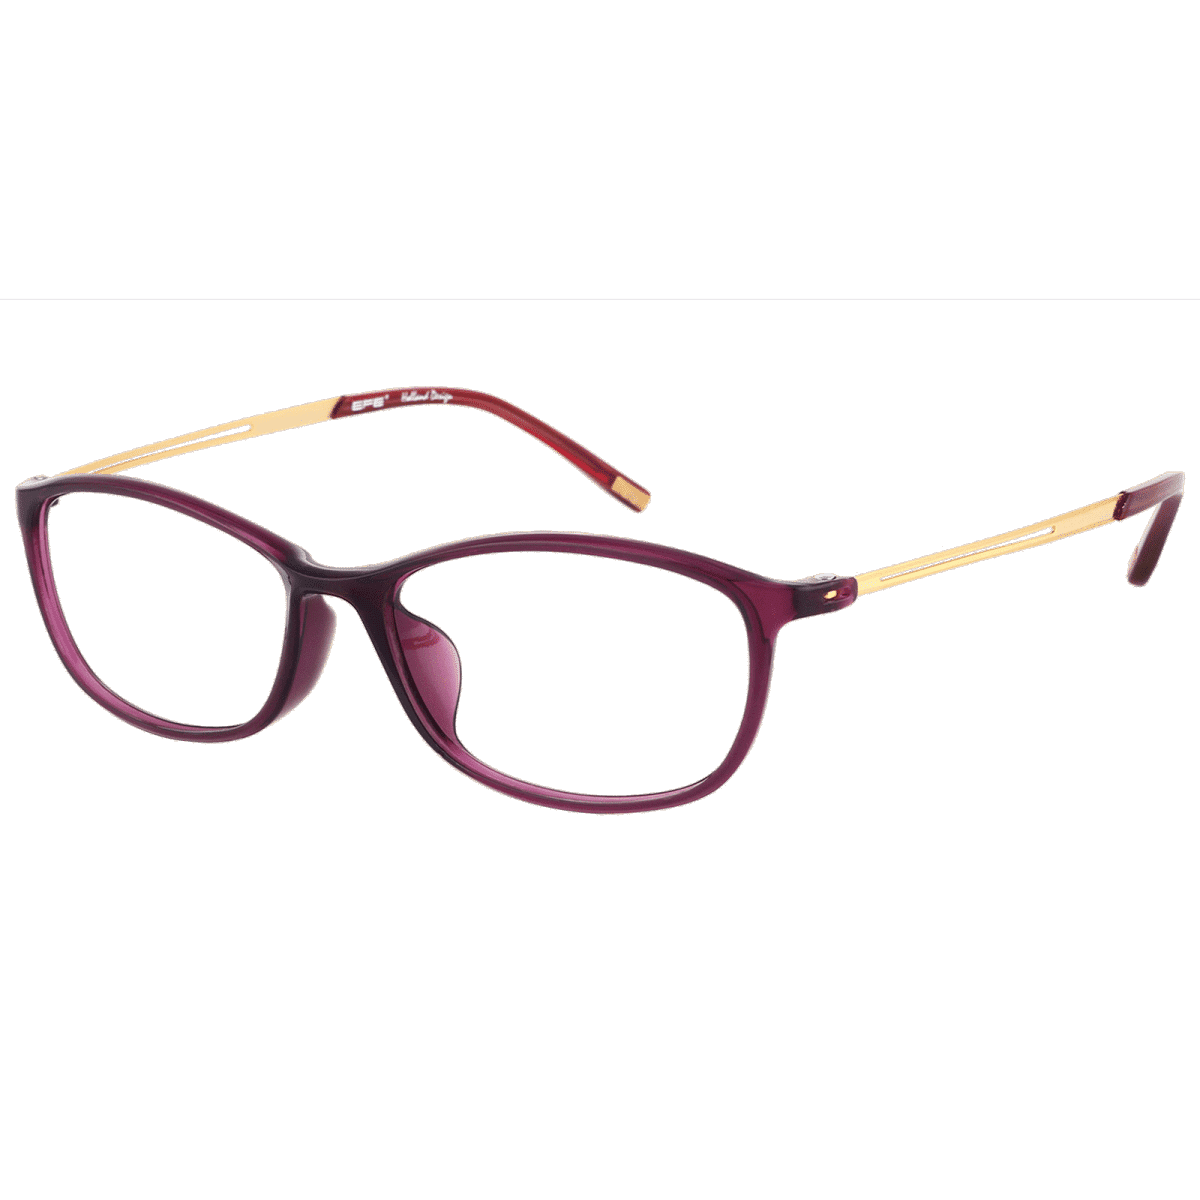 Pindar - Oval Purple Reading Glasses for Women